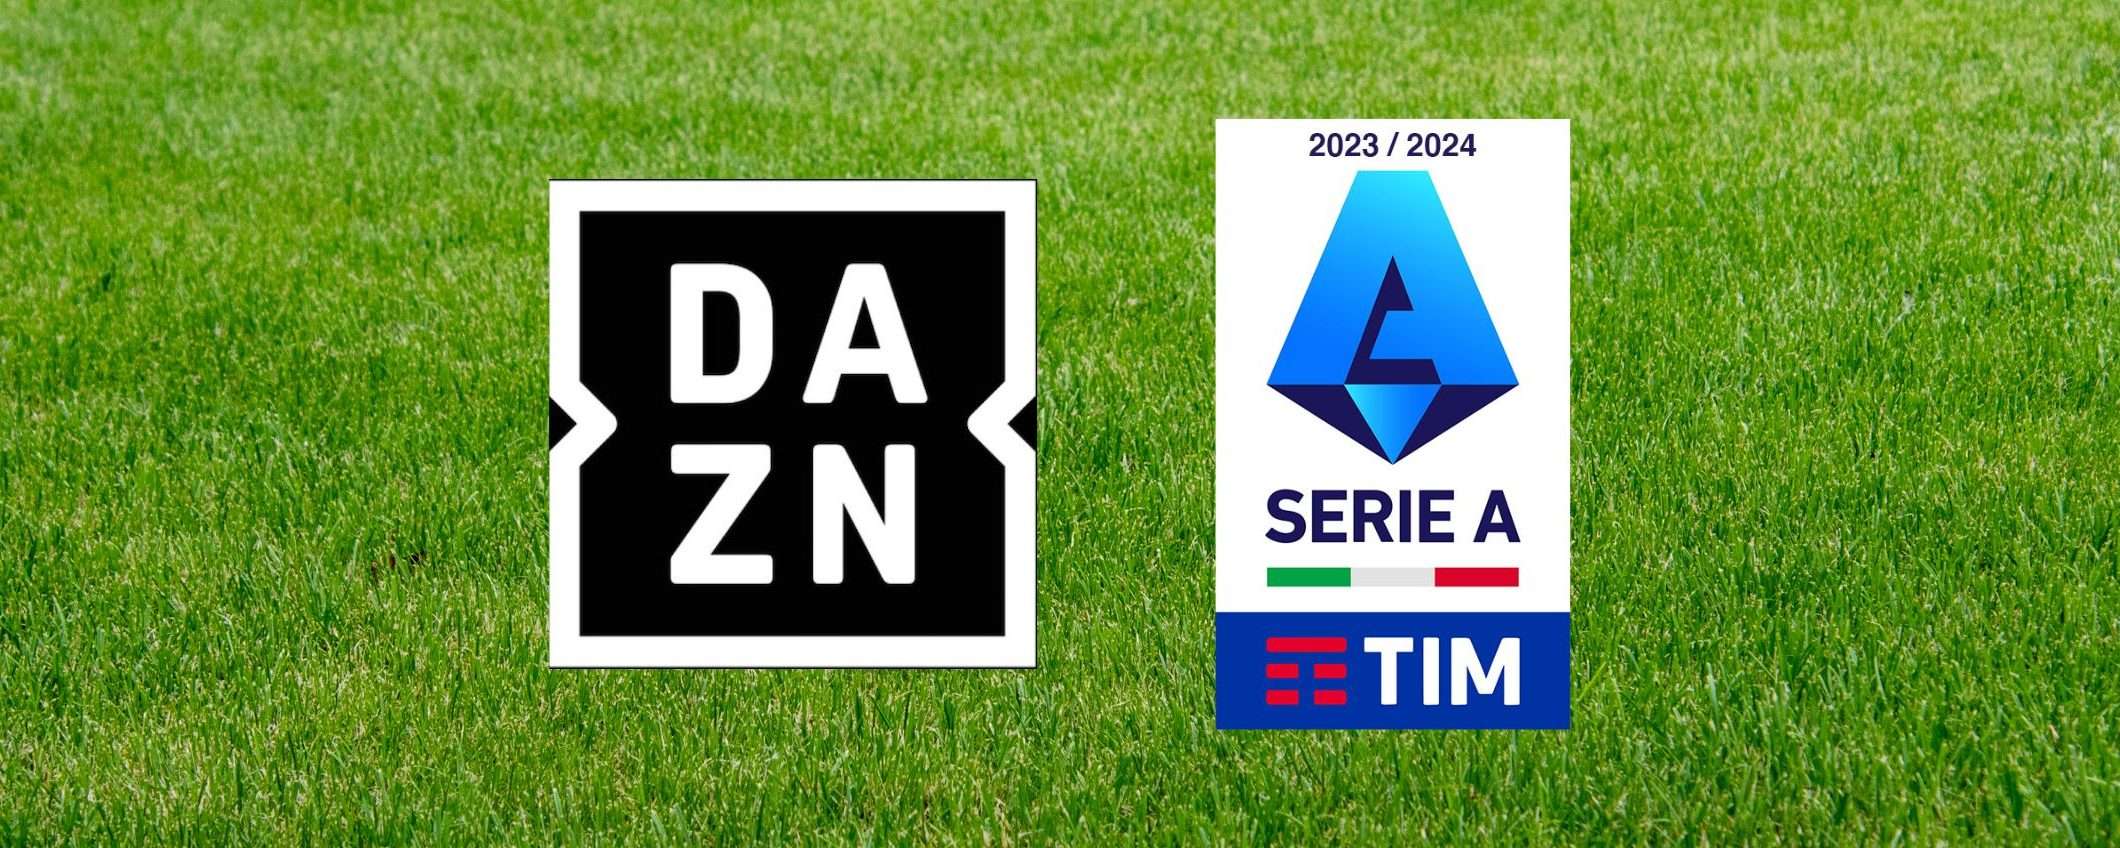 Offerta speciale DAZN Start: Serie A a 9,99 euro per un mese